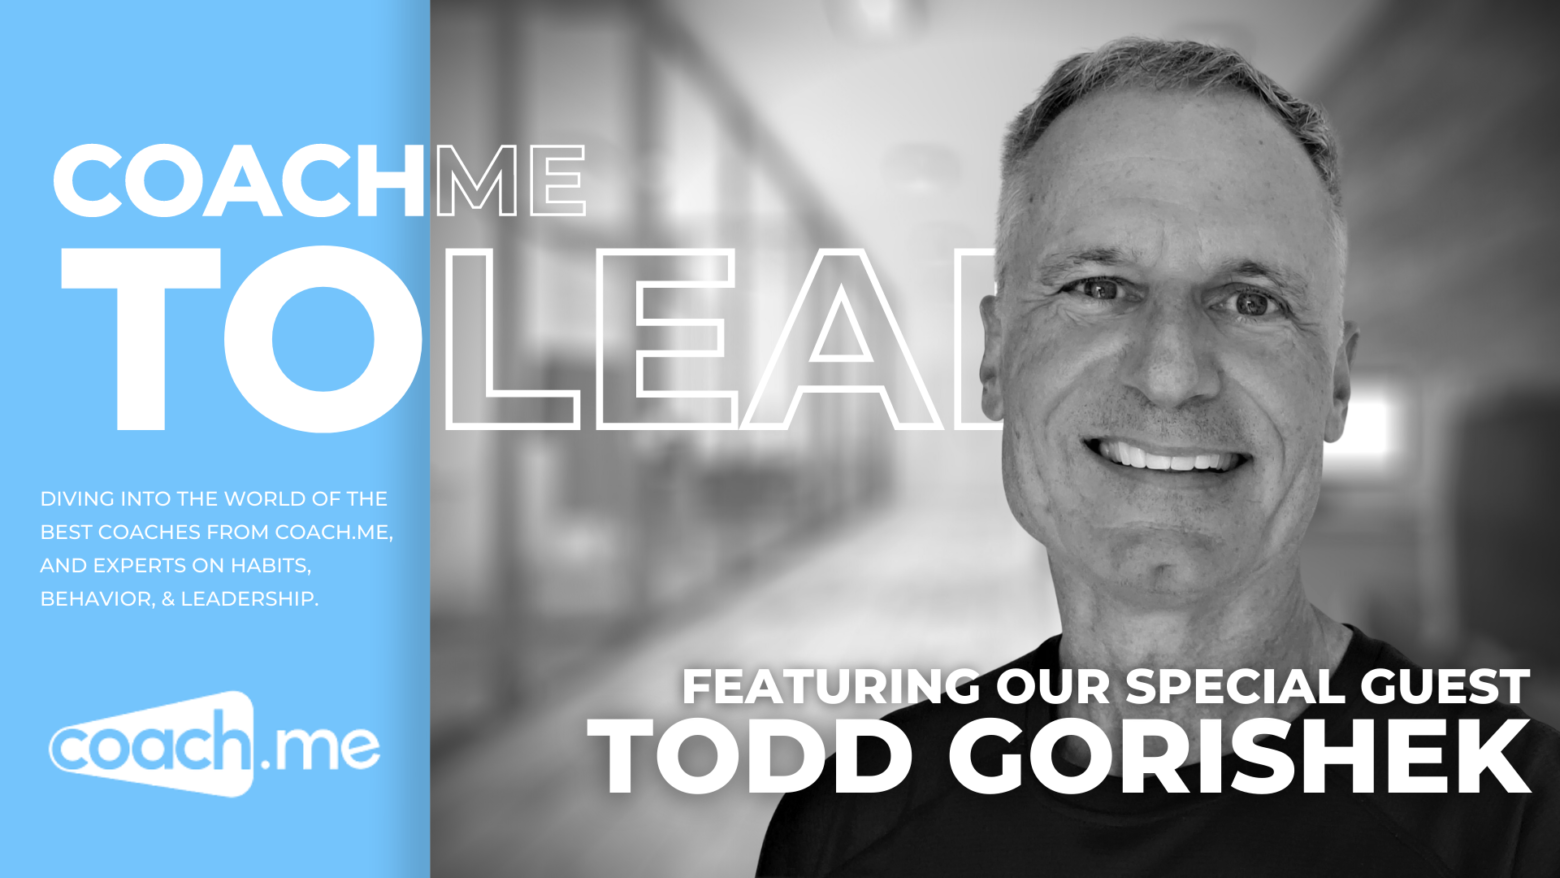 Todd Gorishek – Career and confidence for men